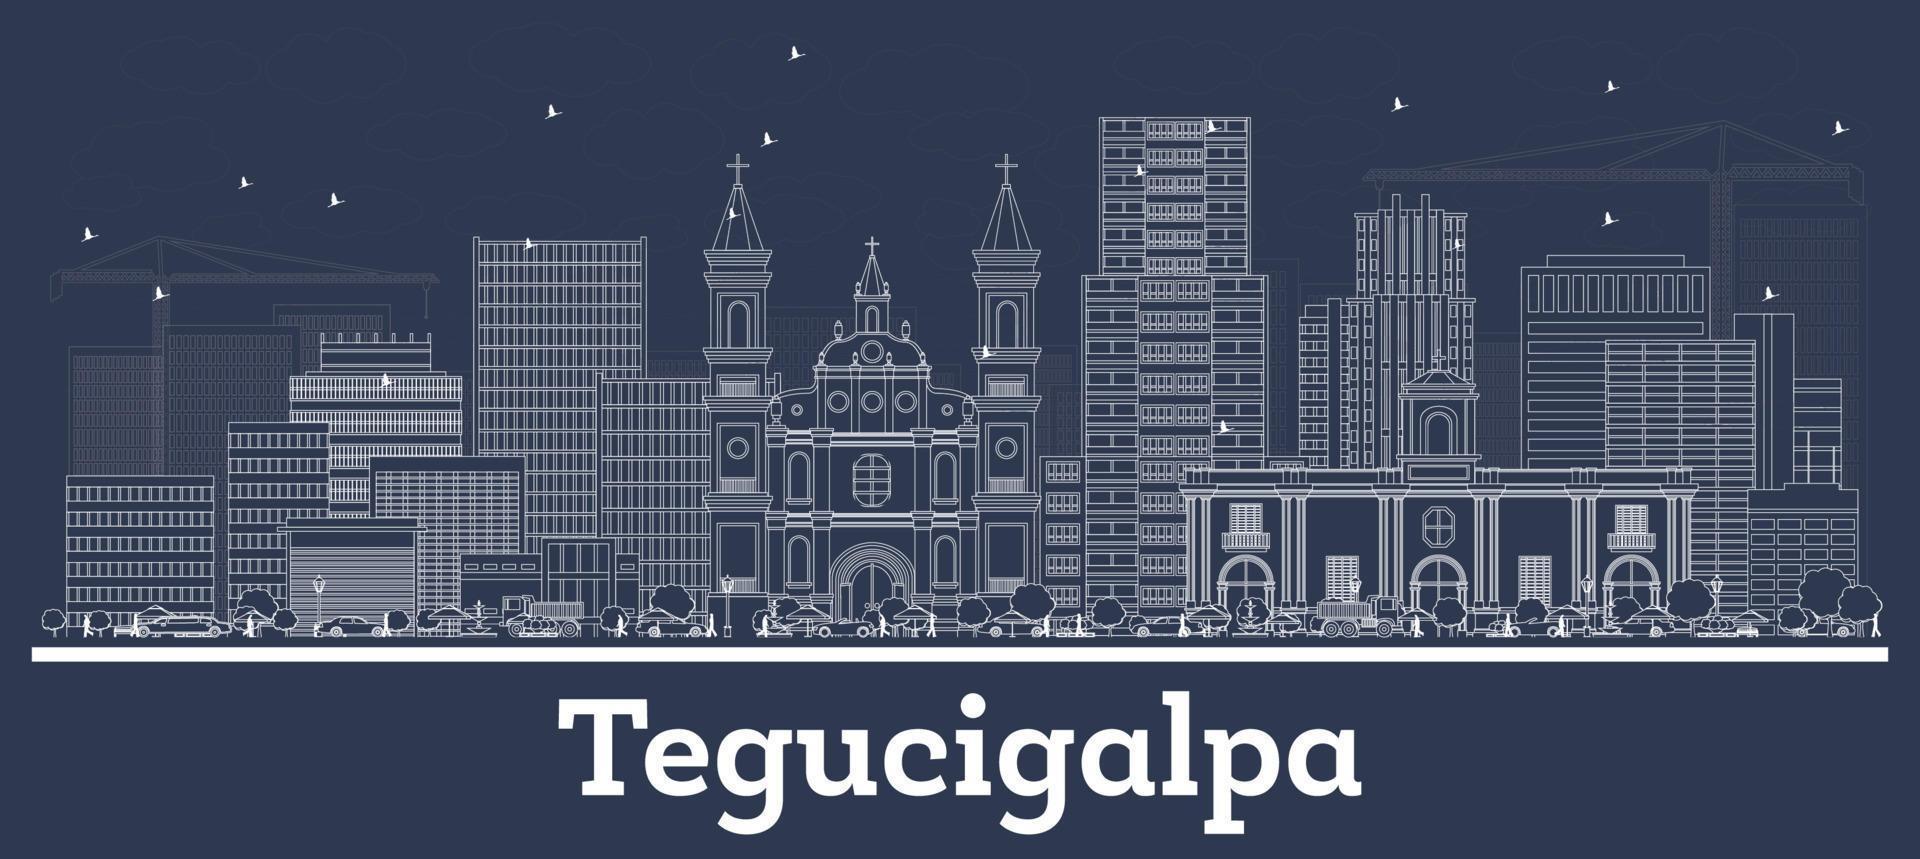 delineie o horizonte da cidade de tegucigalpa honduras com edifícios brancos. vetor